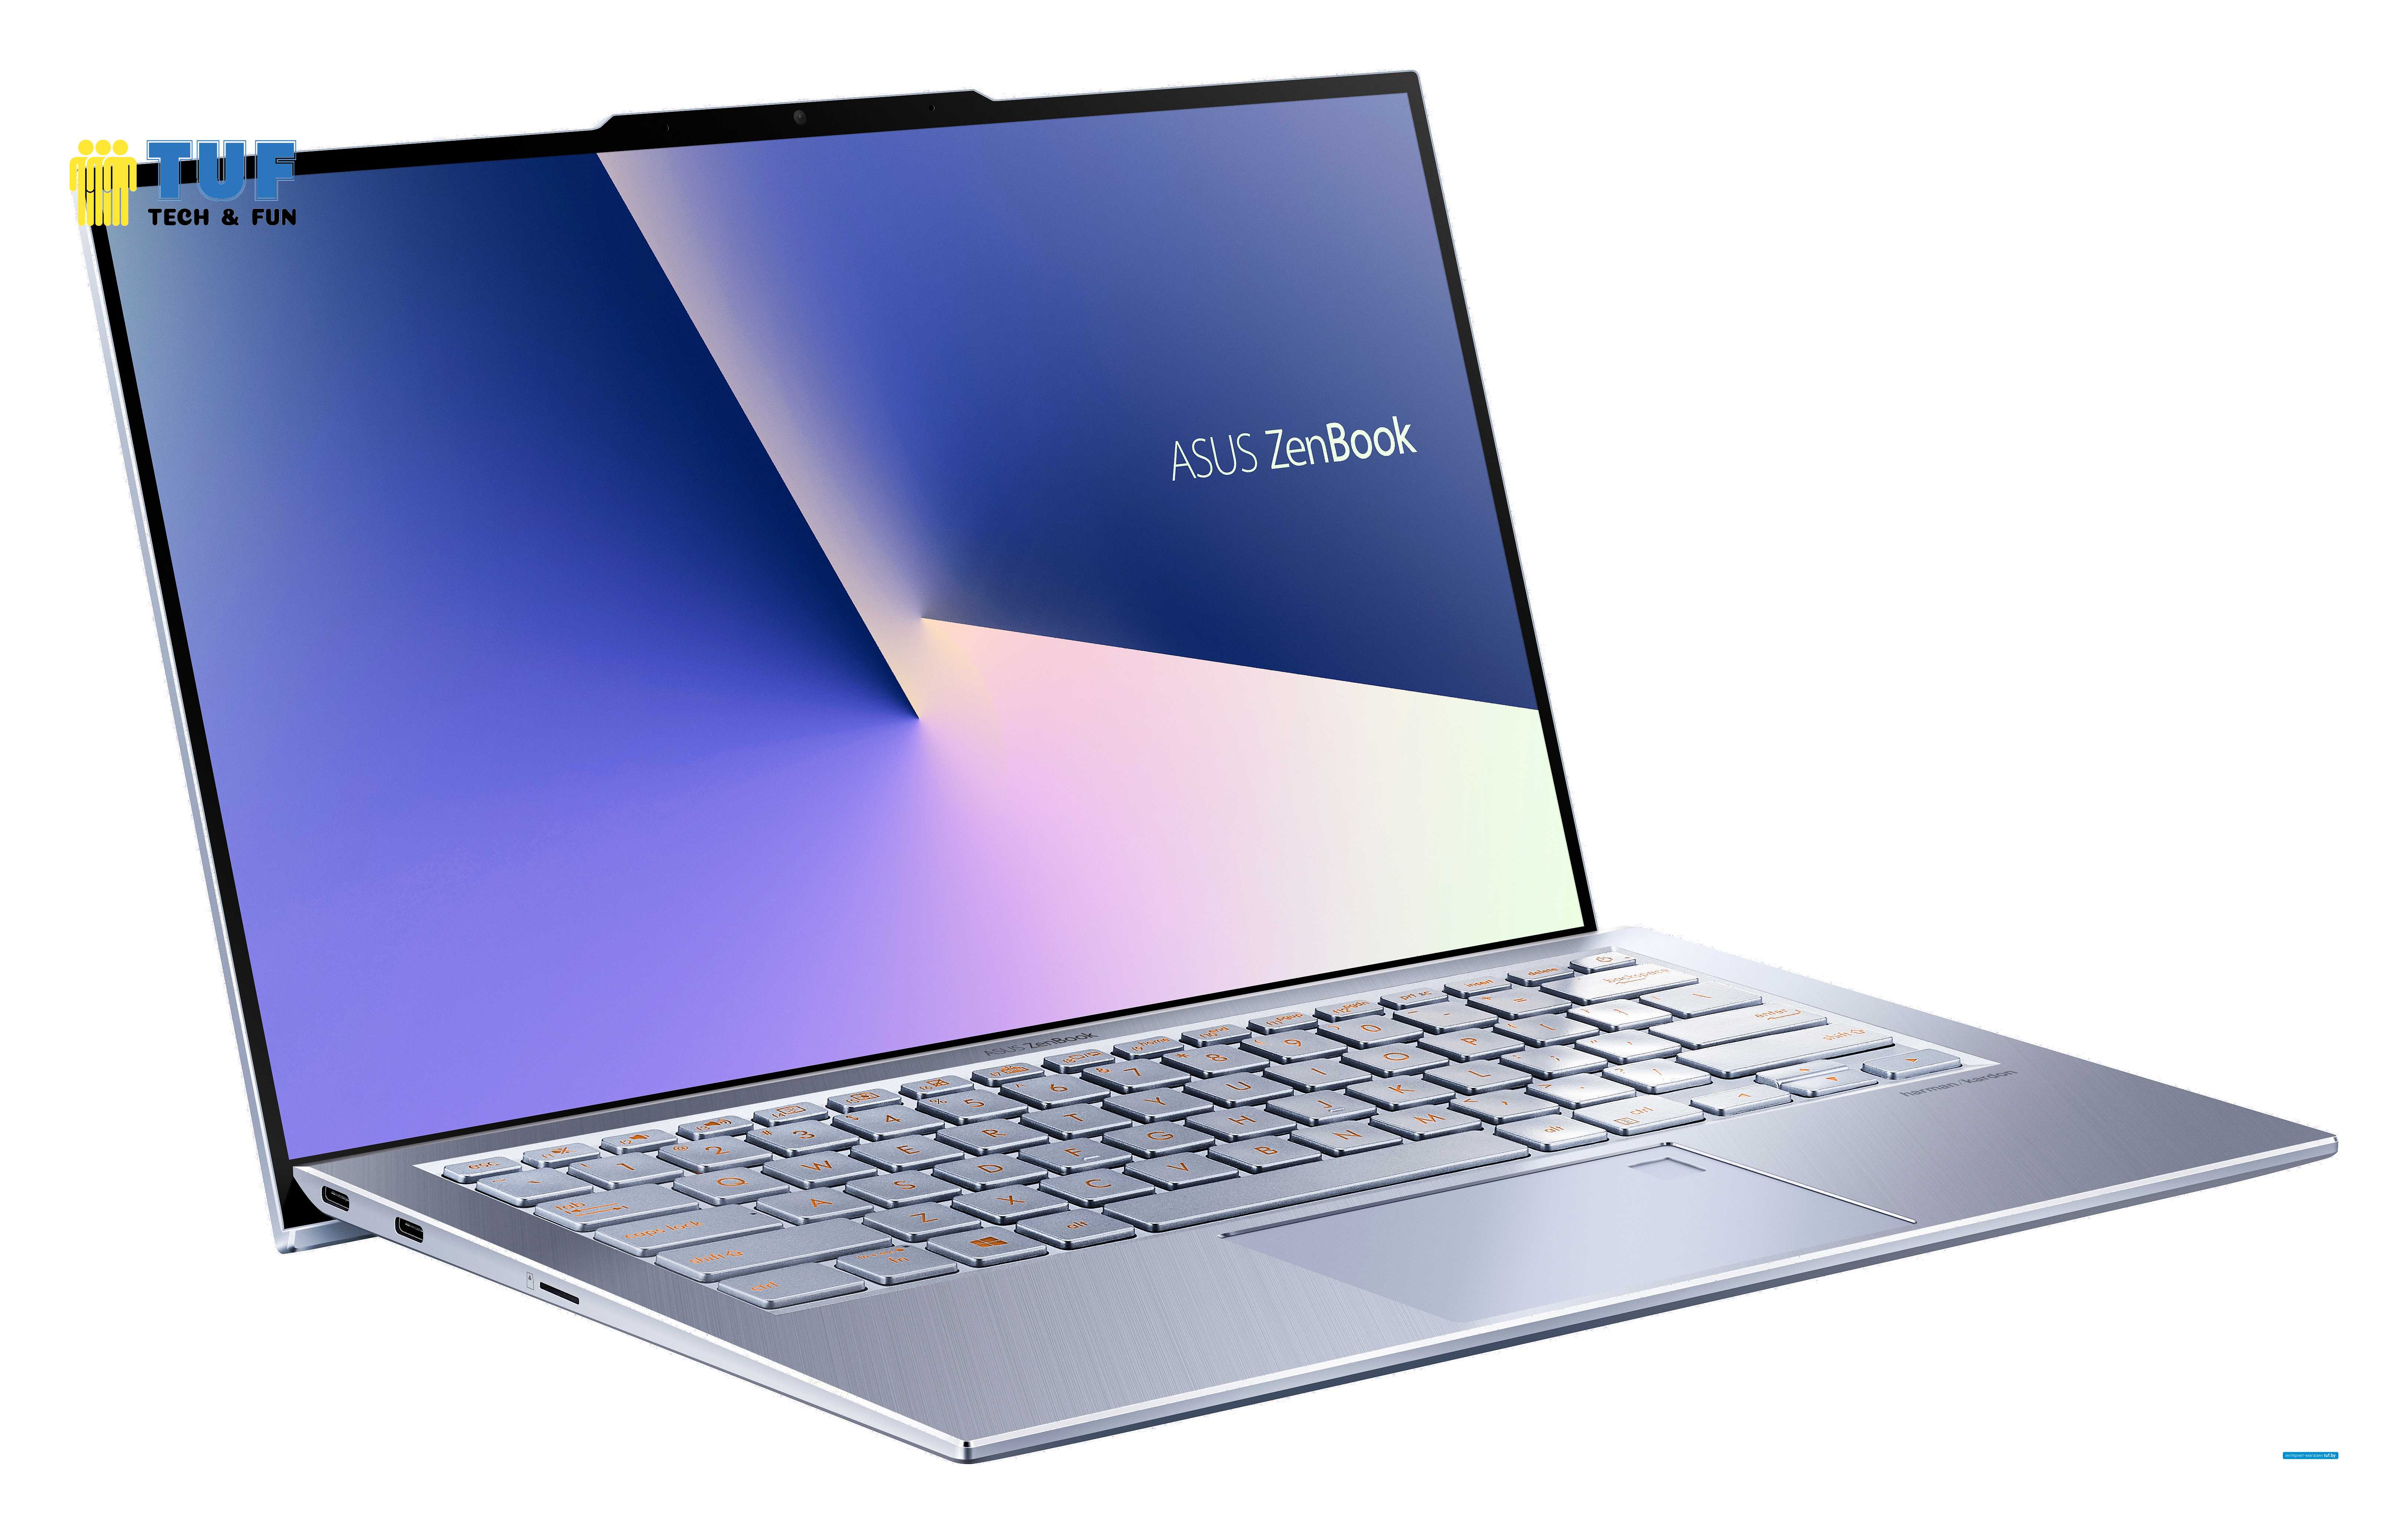 Ноутбук ASUS Zenbook S13 UX392FA-AB001R